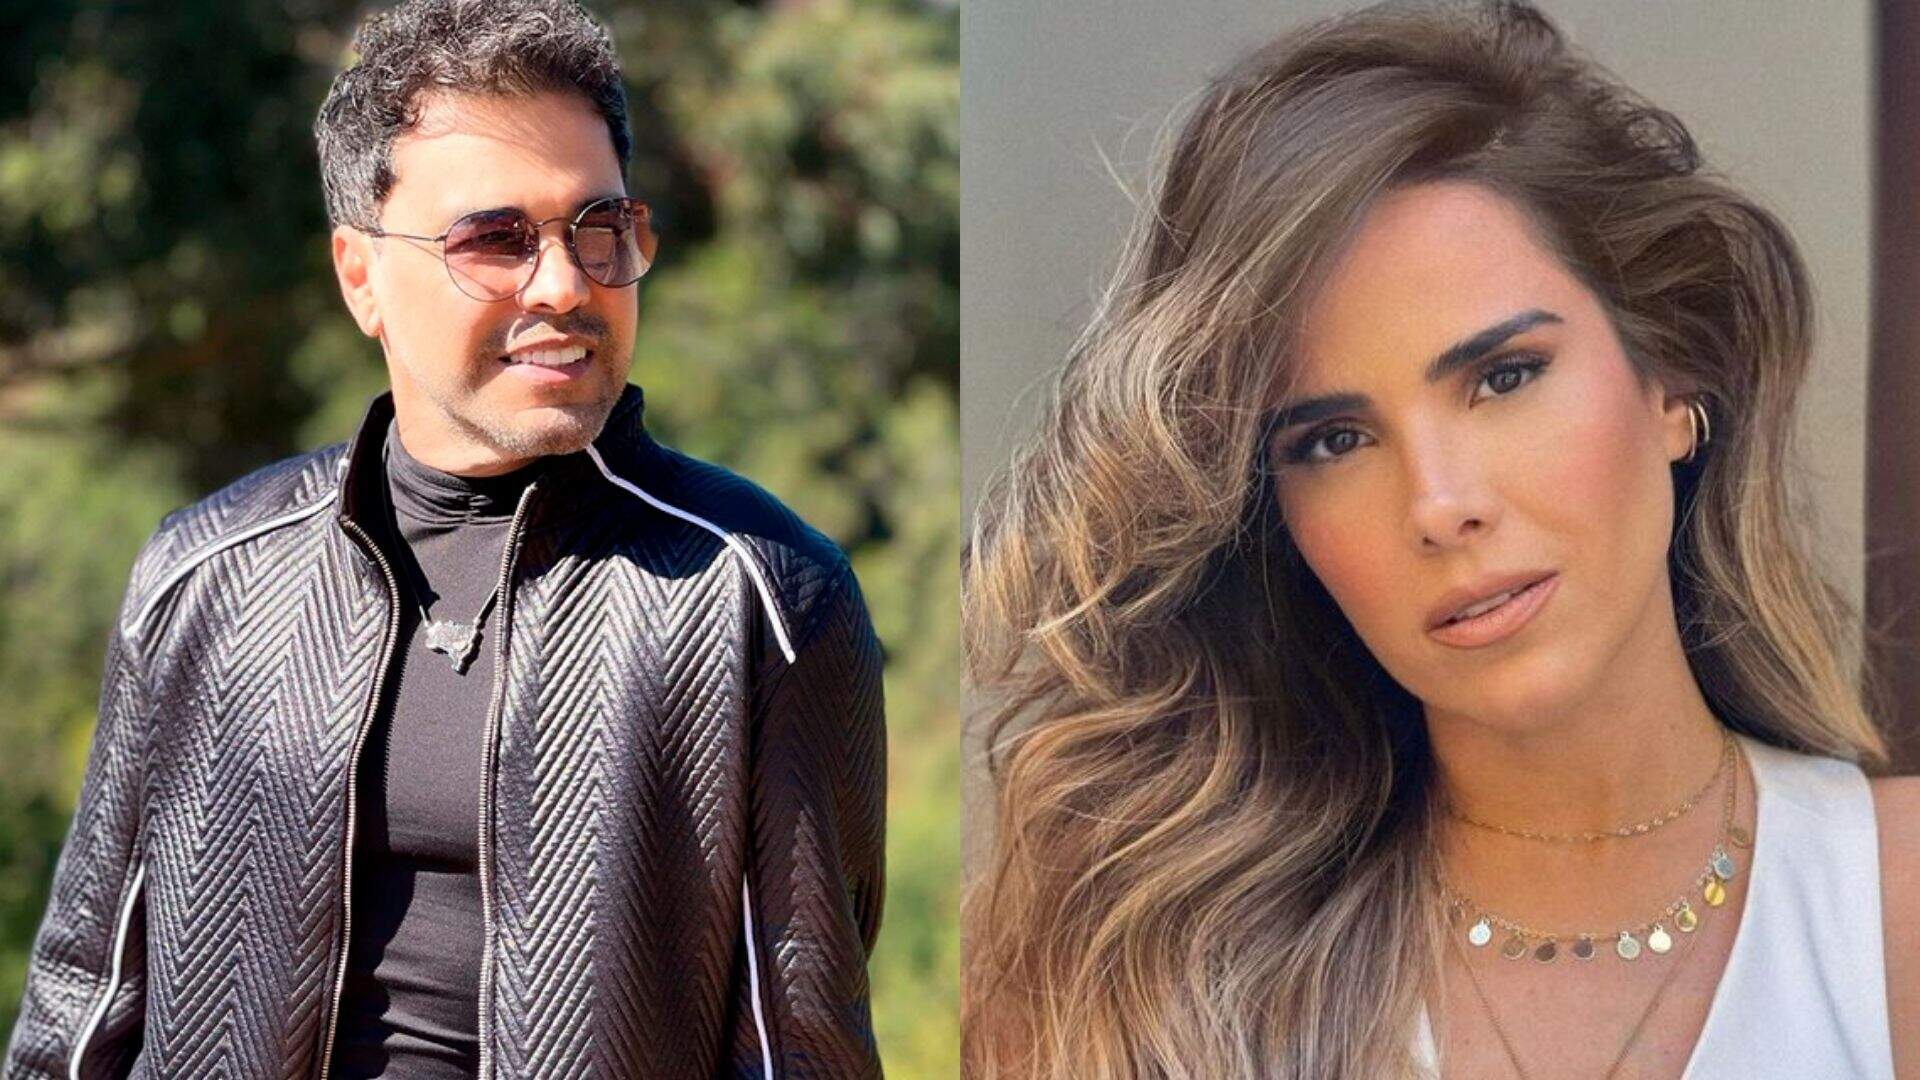 Zezé di Camargo quebra silêncio, comenta divórcio da filha e dispara: “Agindo com coração” - Metropolitana FM